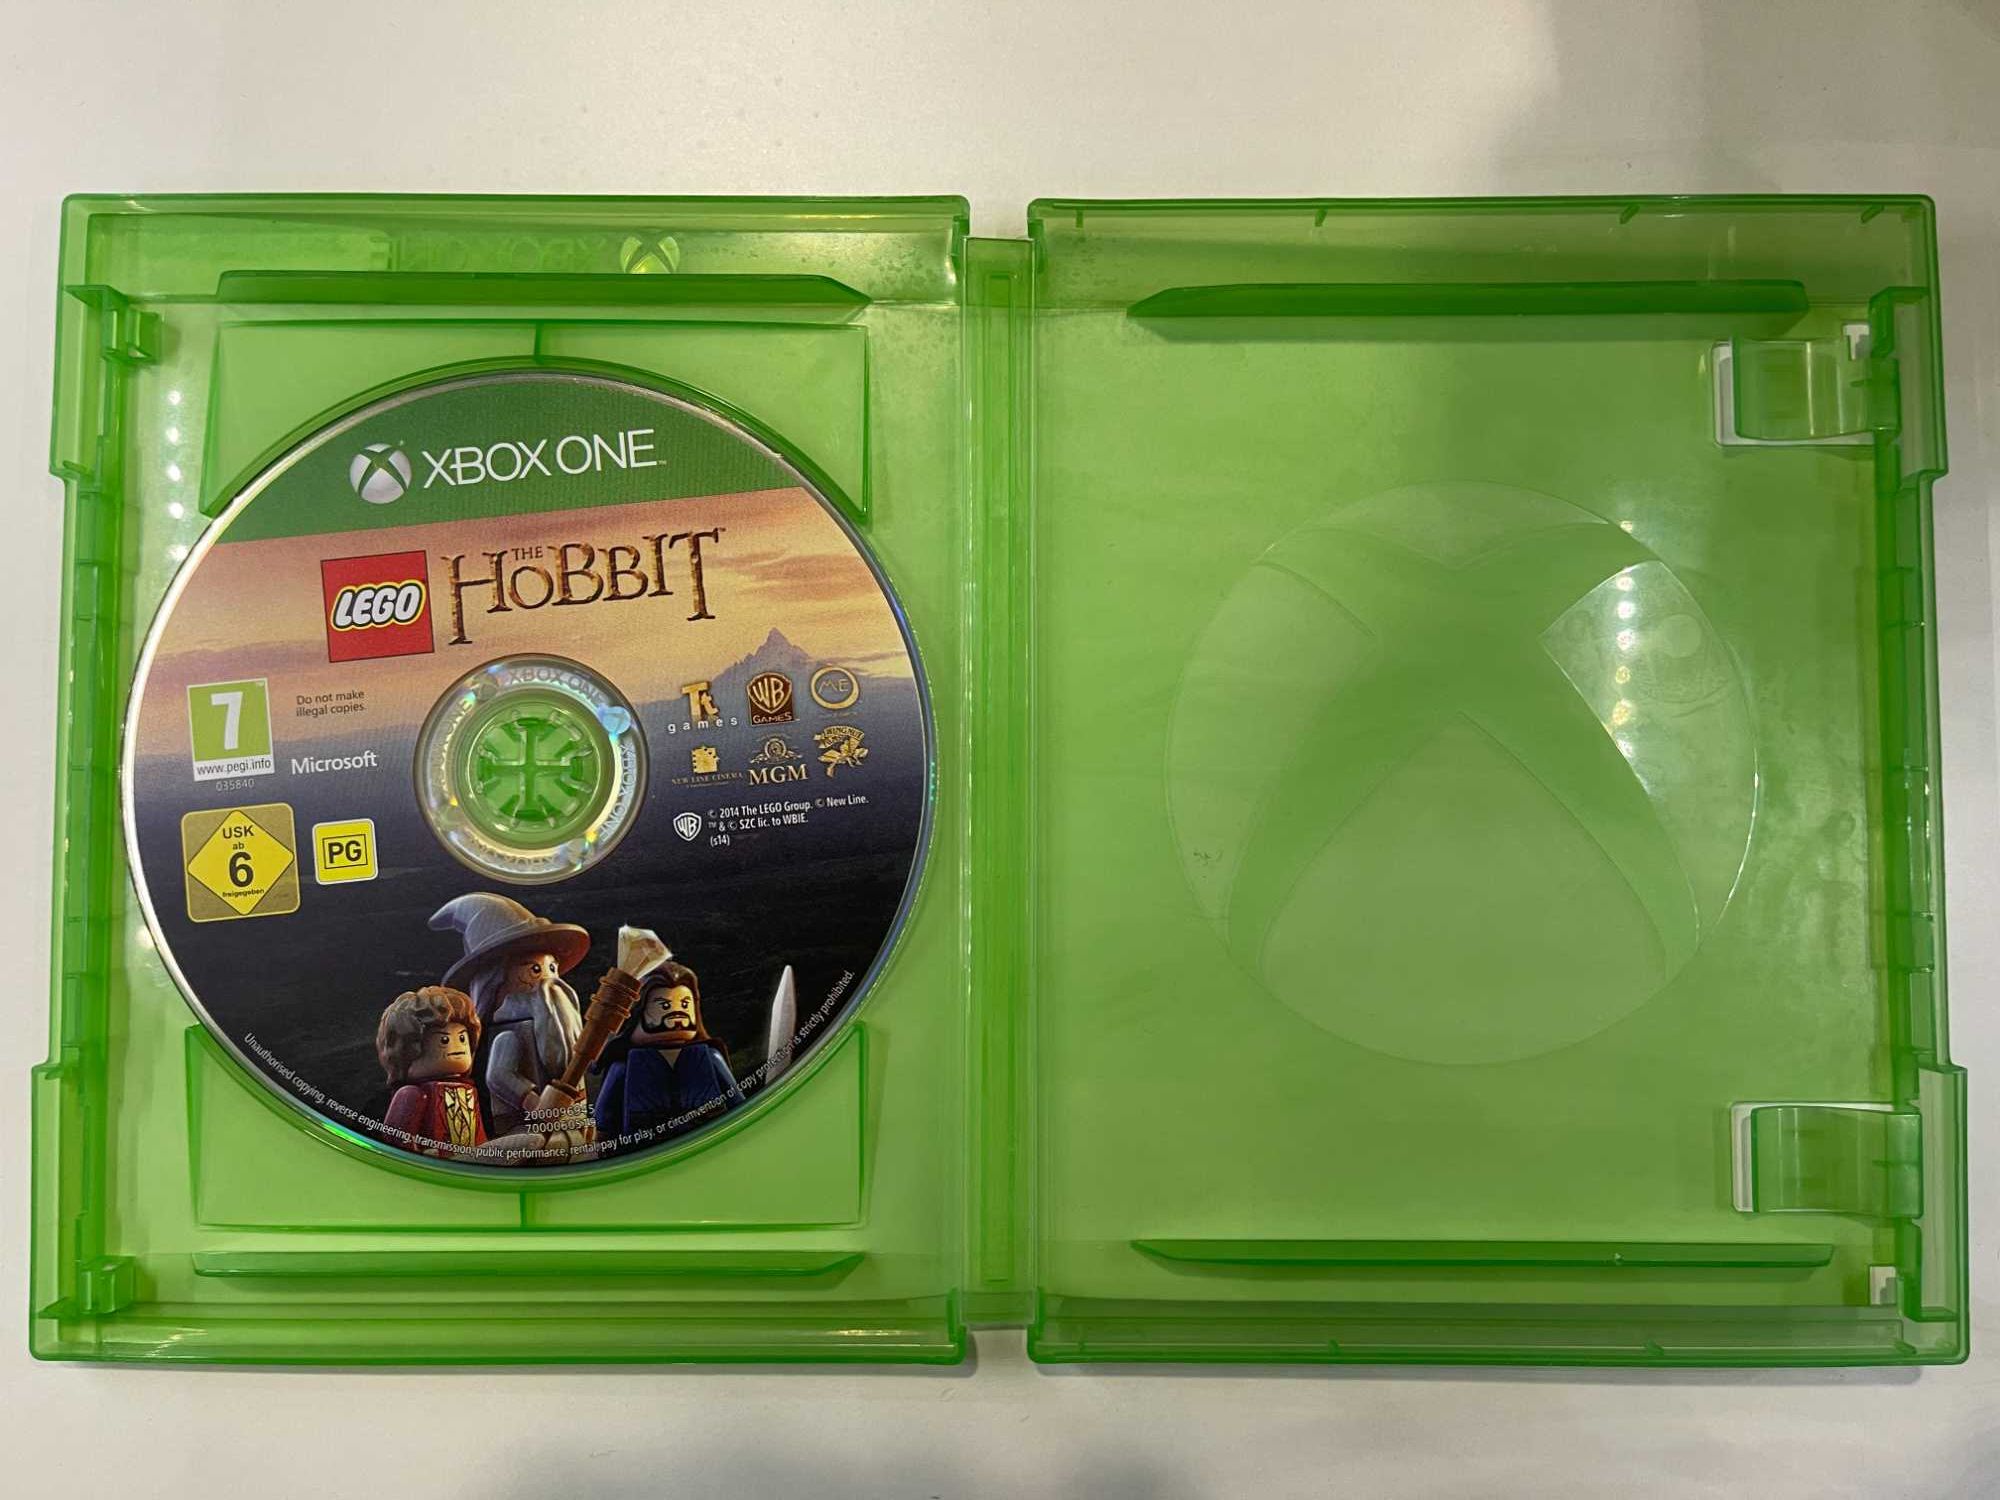 Lego The Hobbit Xbox One